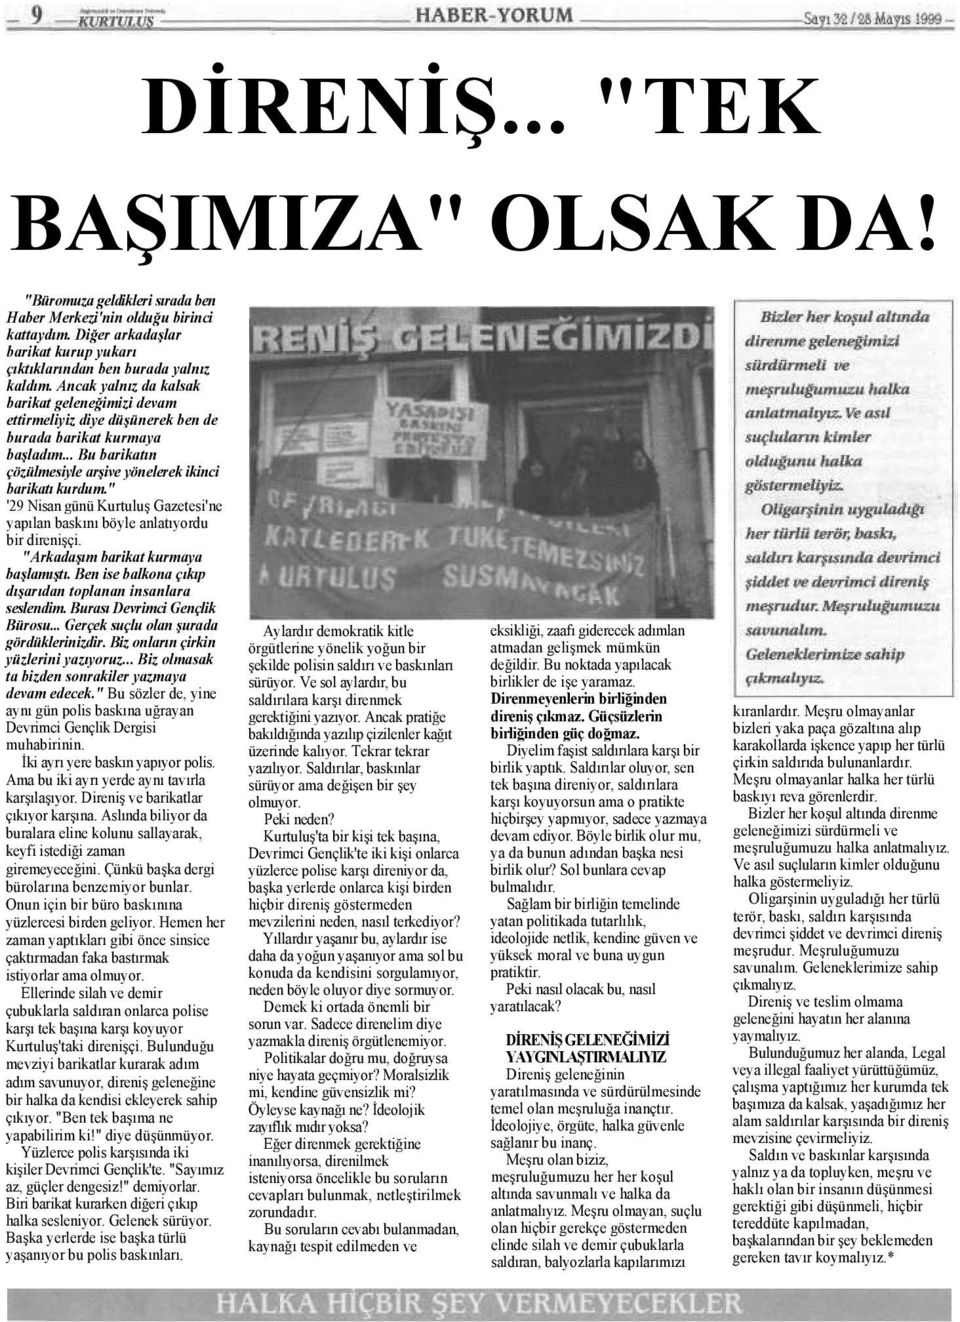 " '29 Nisan günü Kurtuluş Gazetesi'ne yapılan baskını böyle anlatıyordu bir direnişçi. "Arkadaşım barikat kurmaya başlamıştı. Ben ise balkona çıkıp dışarıdan toplanan insanlara seslendim.